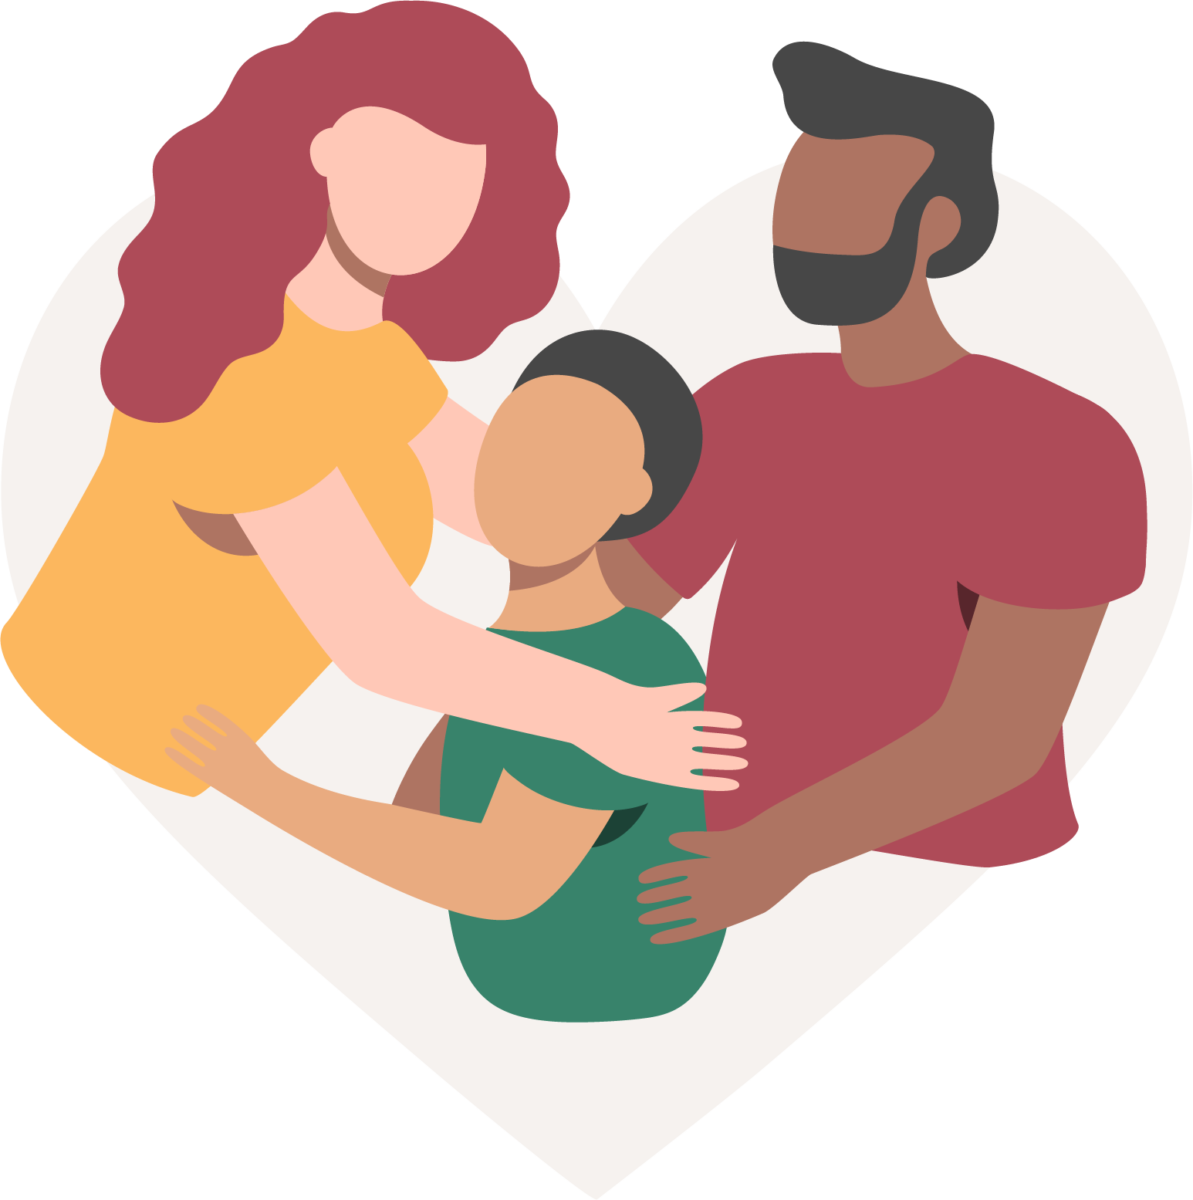 женщина с рыжими волосами и желтой рубашкой и мужчина с черными волосами и бородой обнимают ребенка в зеленой рубашке и черных волосах, символизируя единство семьи